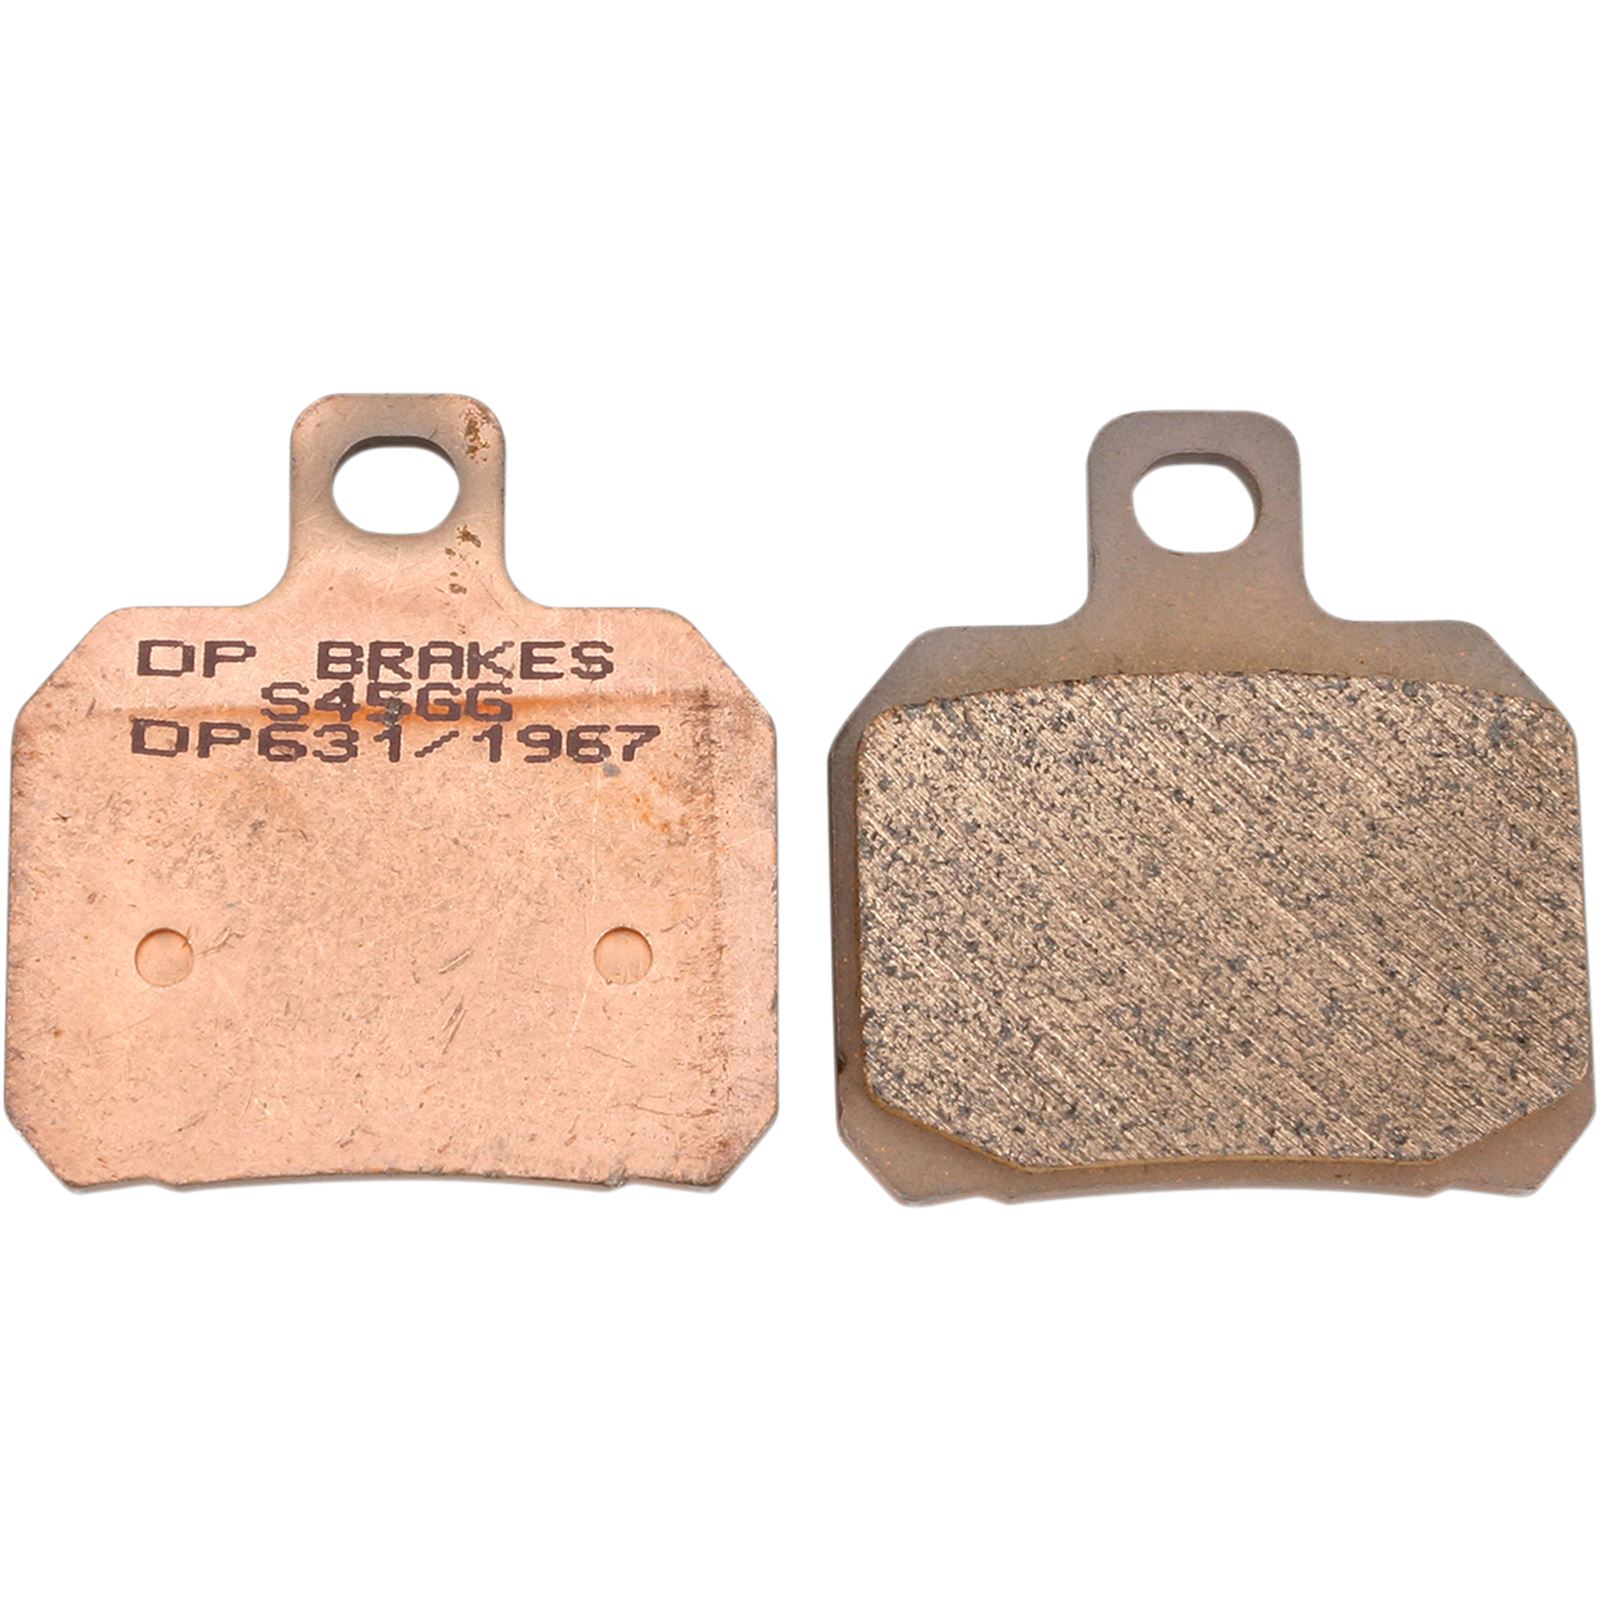 DP Brakes Standard Brake Pads